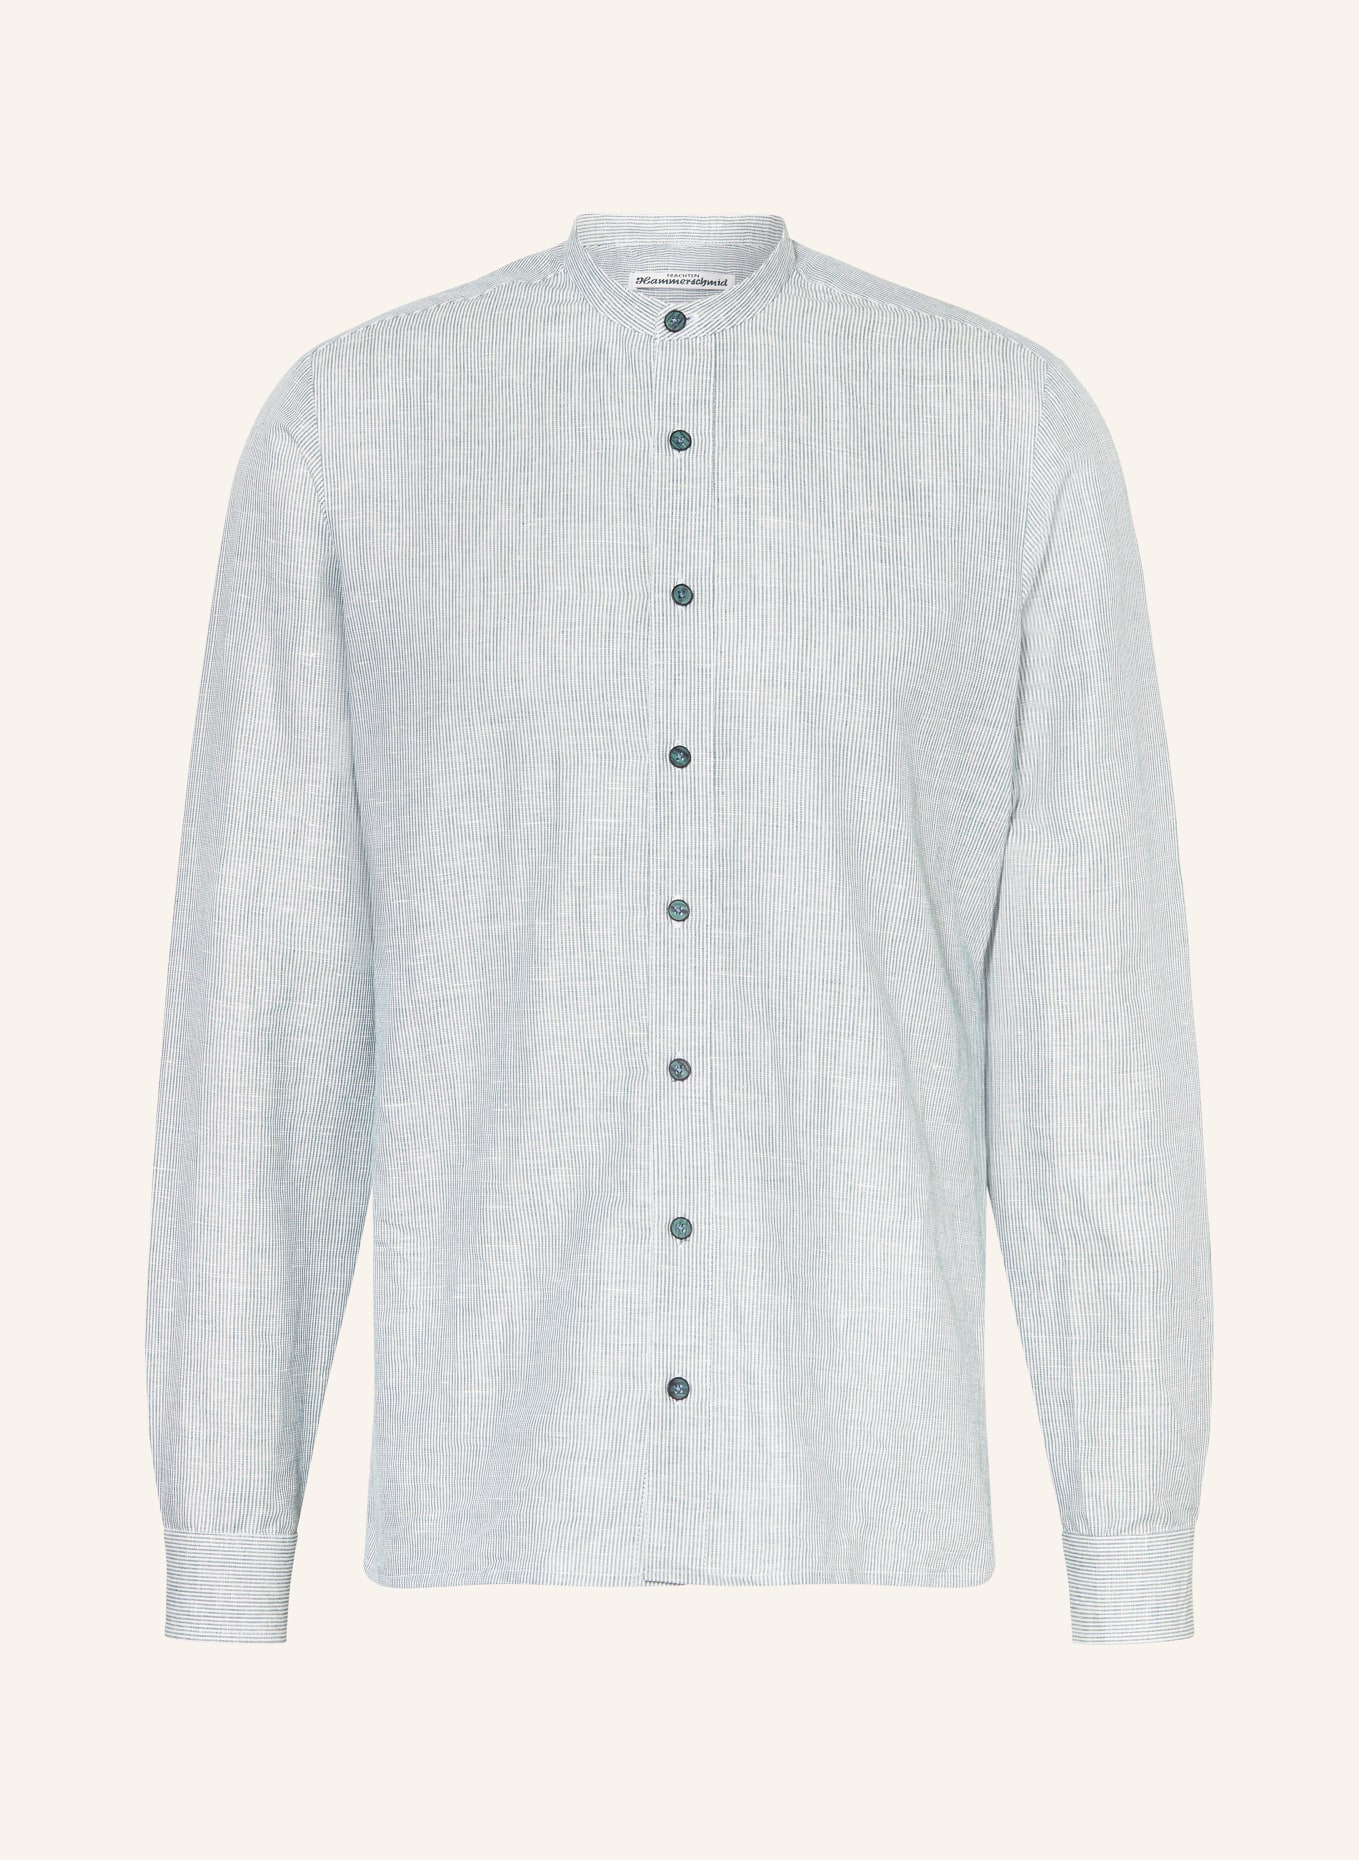 Hammerschmid Trachtenhemd Slim Fit mit Stehkragen und Leinen, Farbe: GRÜN (Bild 1)